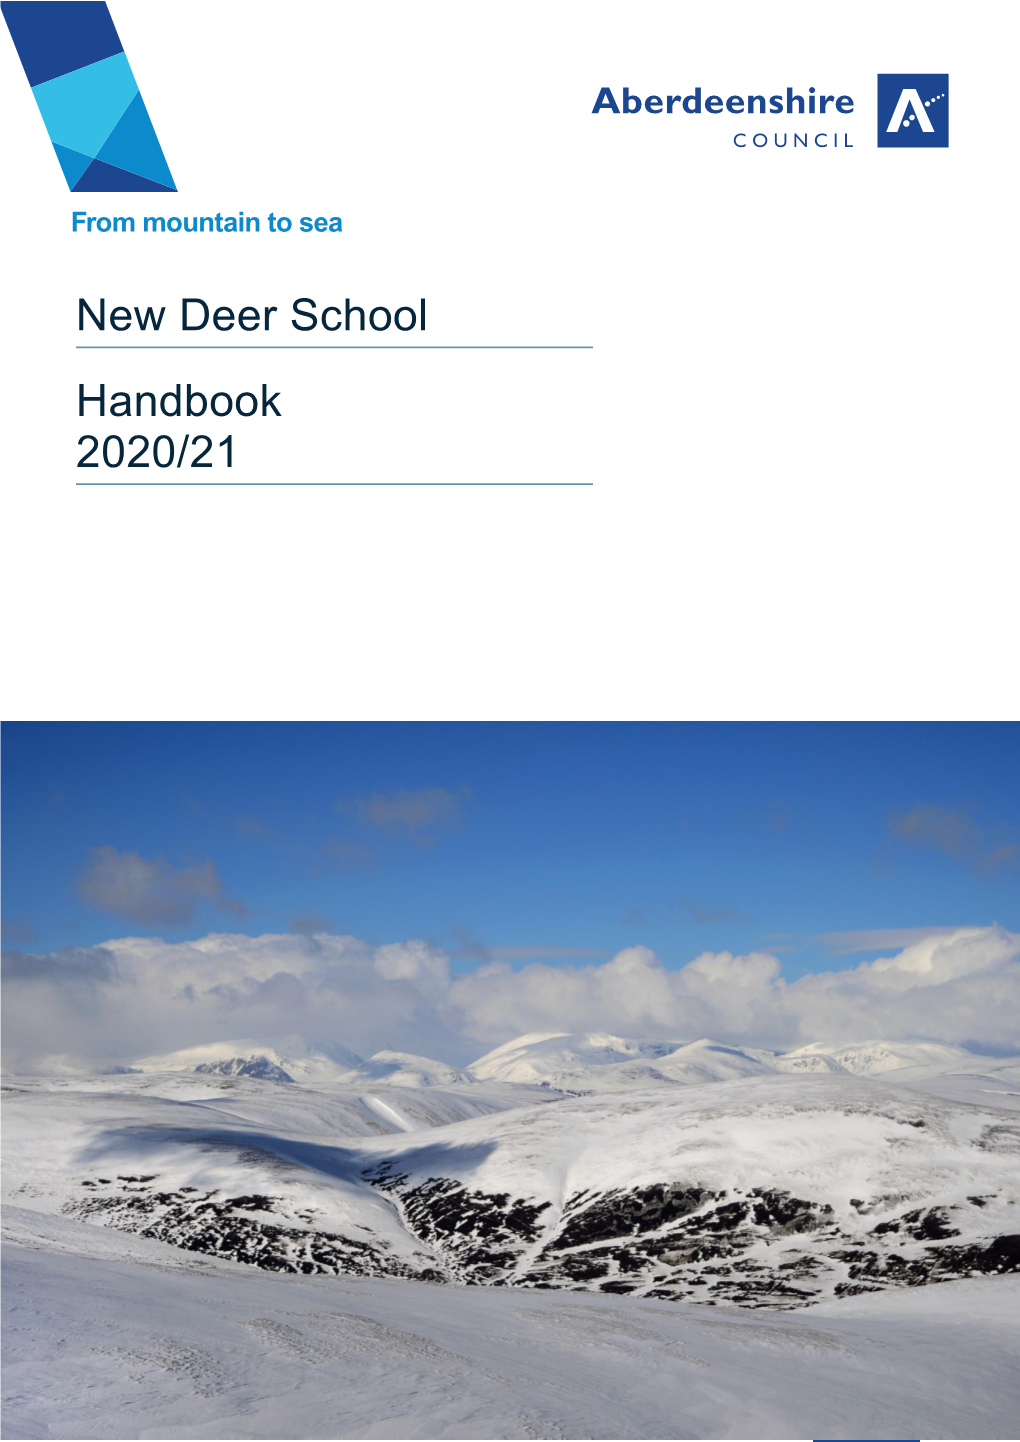 New Deer School